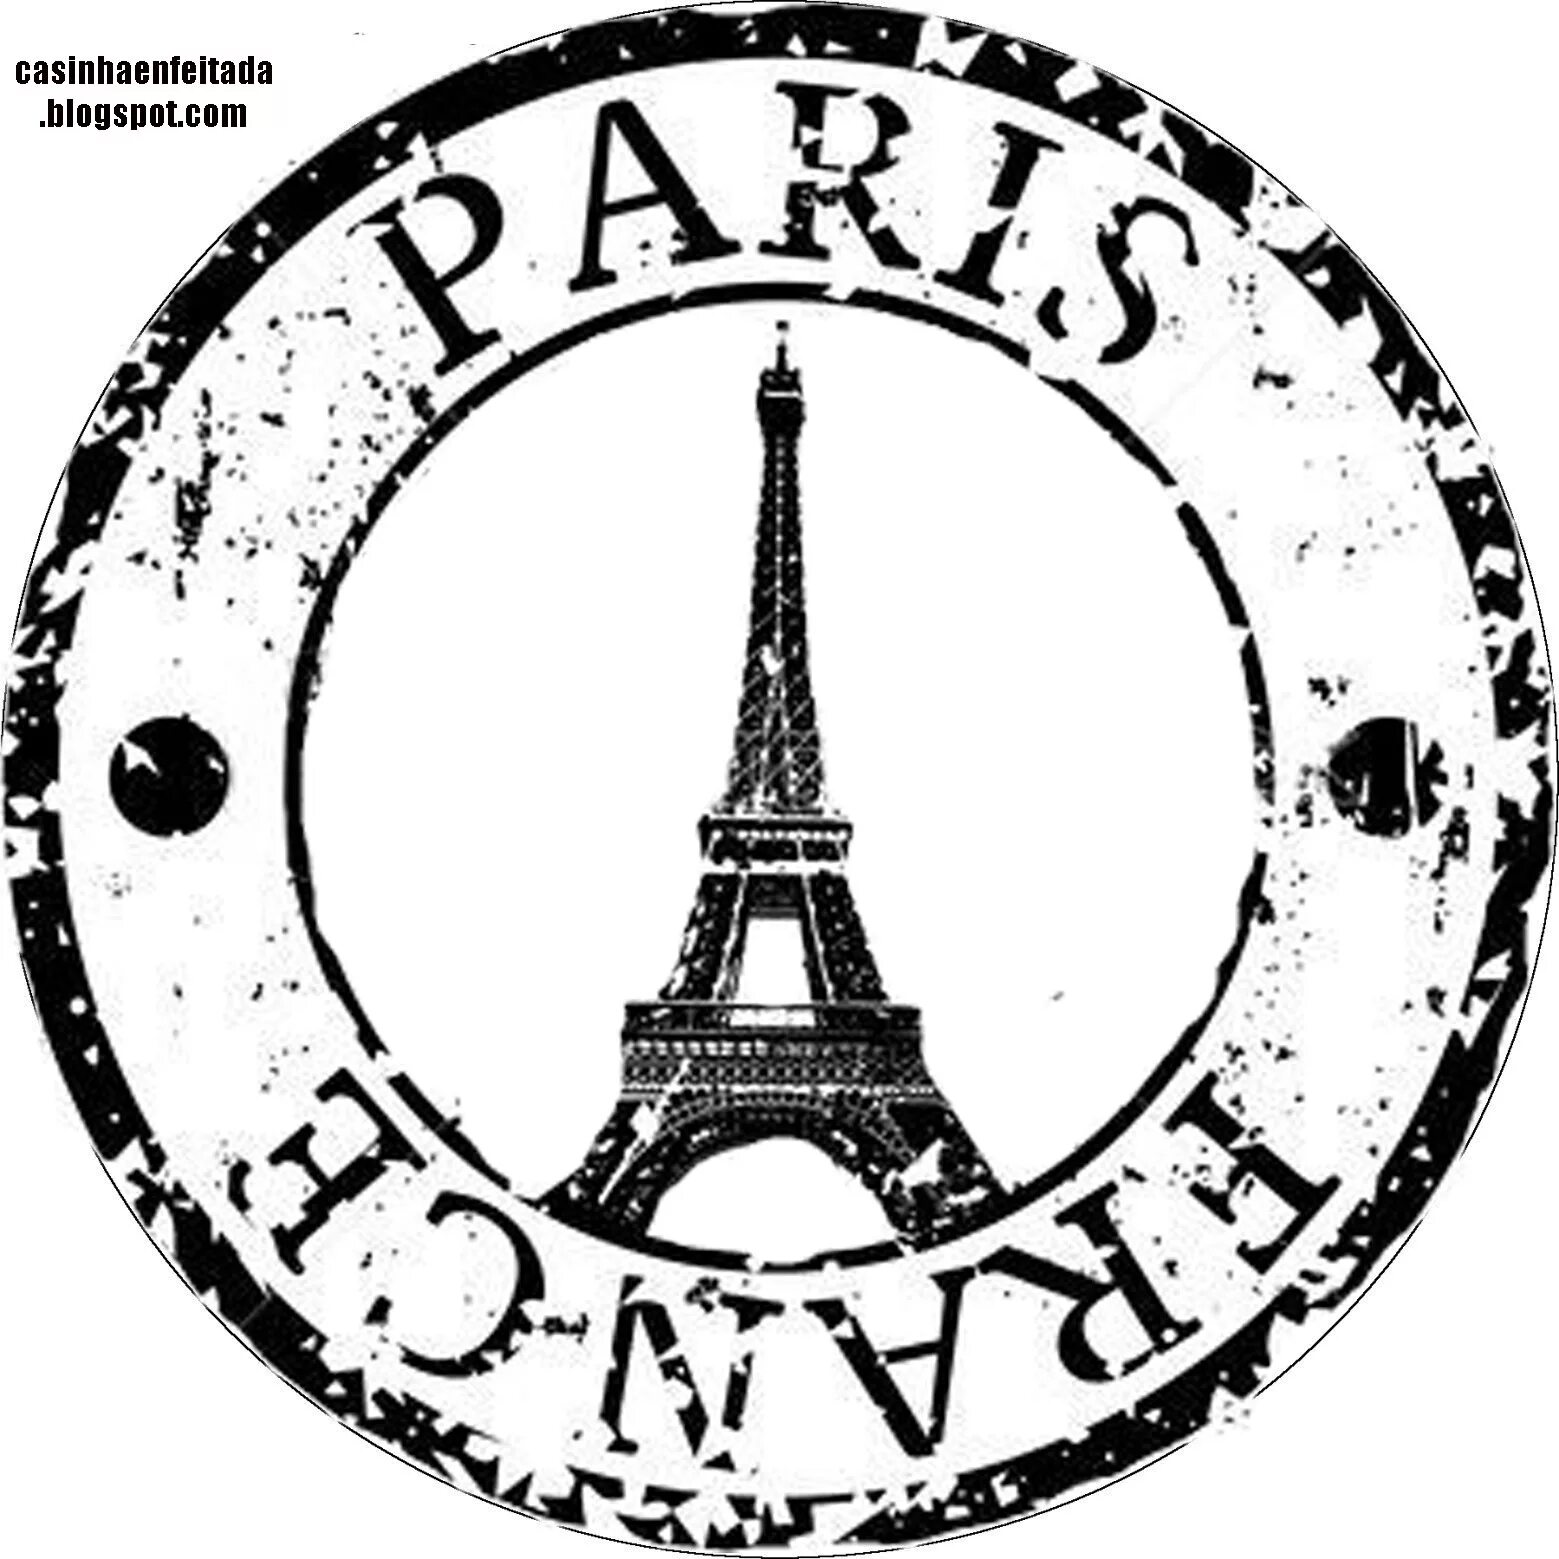 A symbol of paris. Печать Париж. Французская печать. Символы Парижа. Надпись Париж.